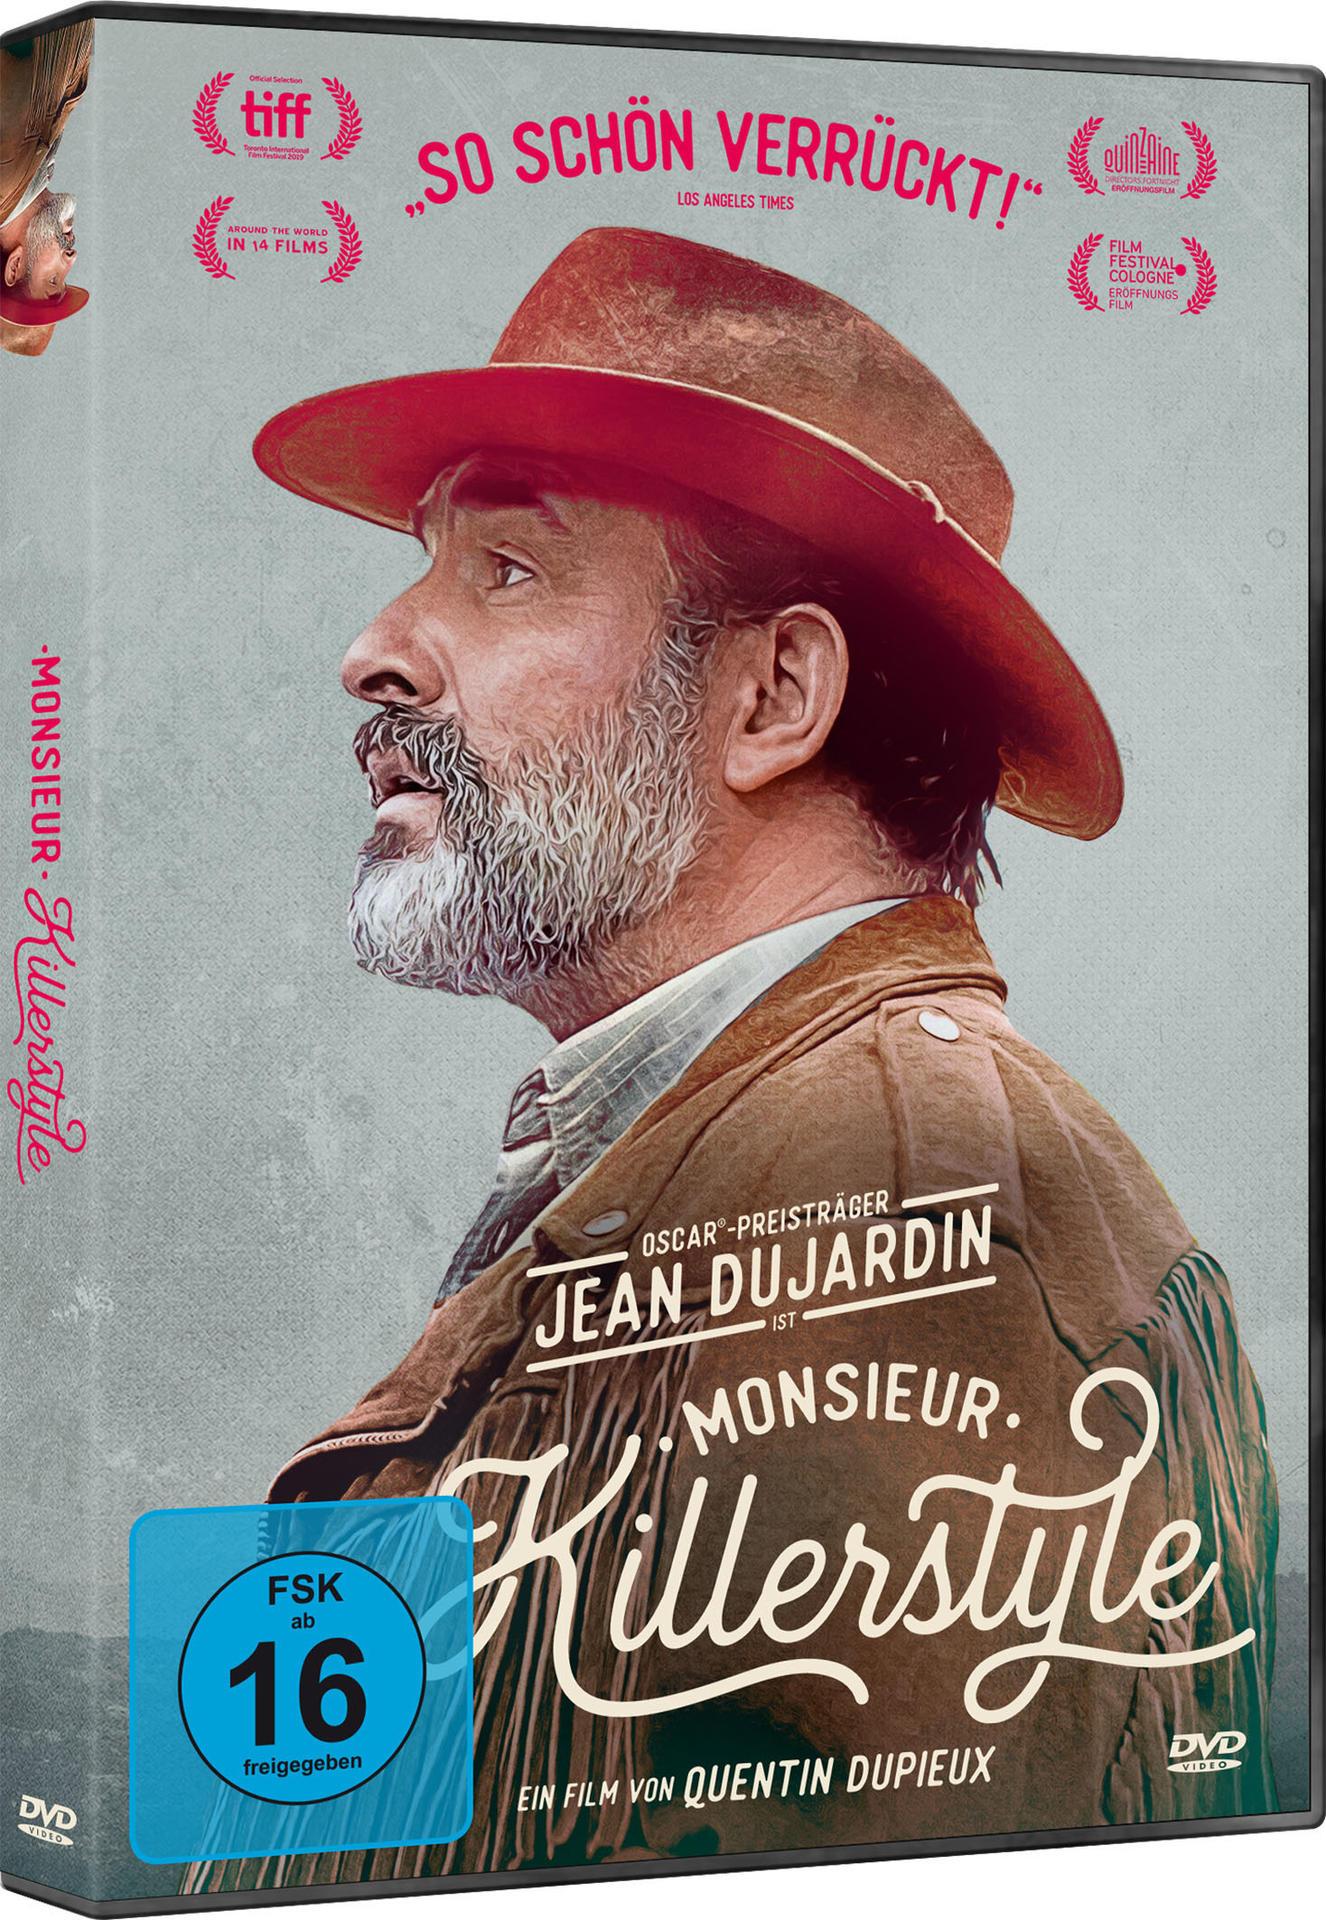 DVD Killerstyle Monsieur